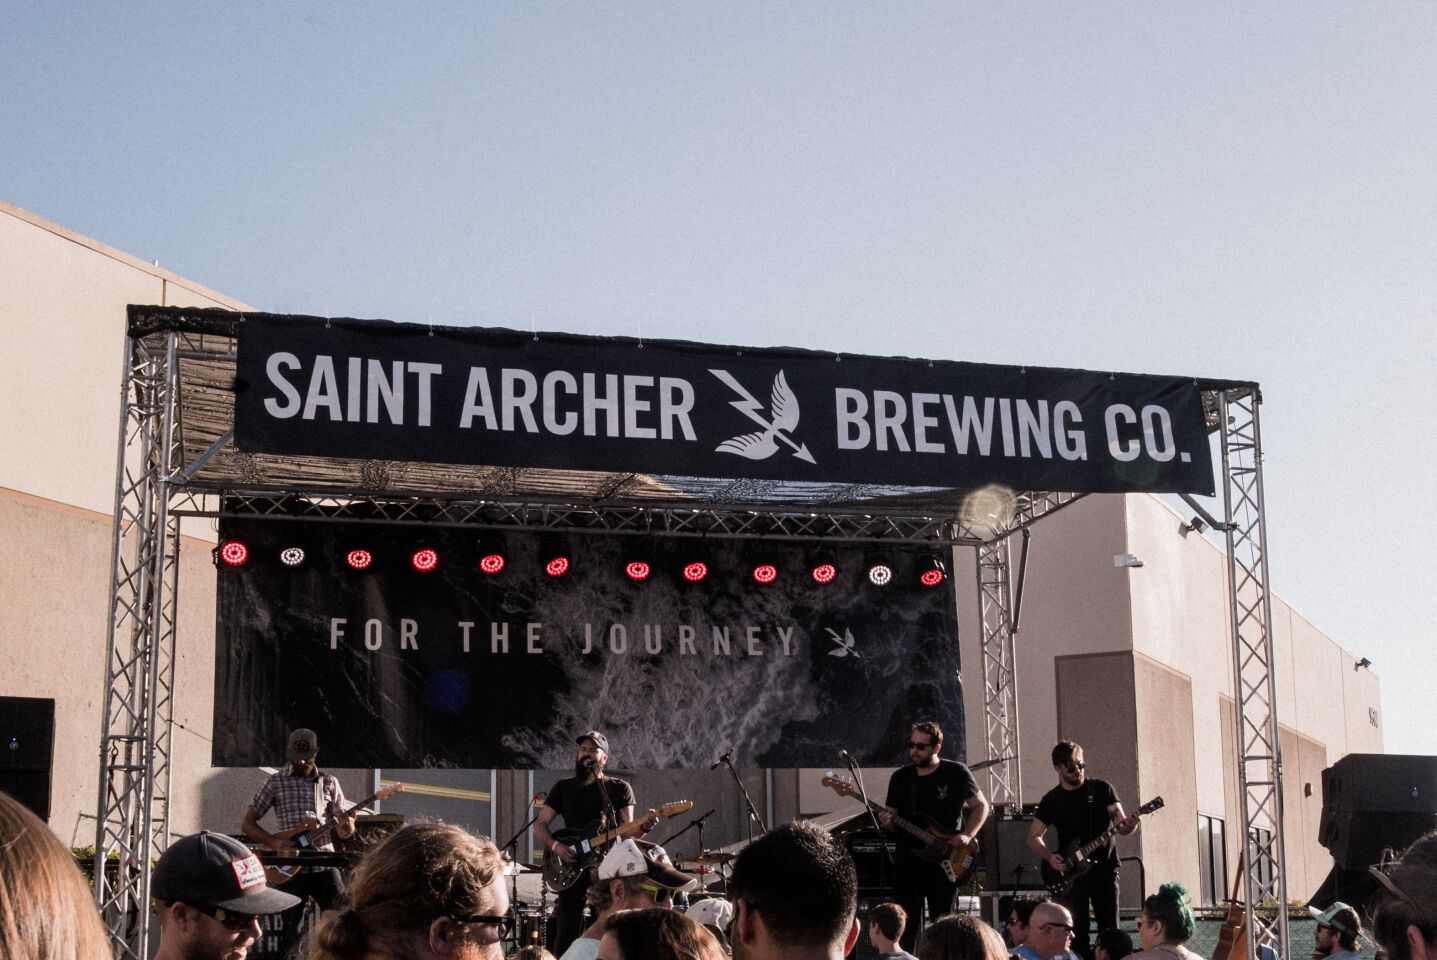 A glimpse into Saint Archer's five-year anniversary celebration in 2018.